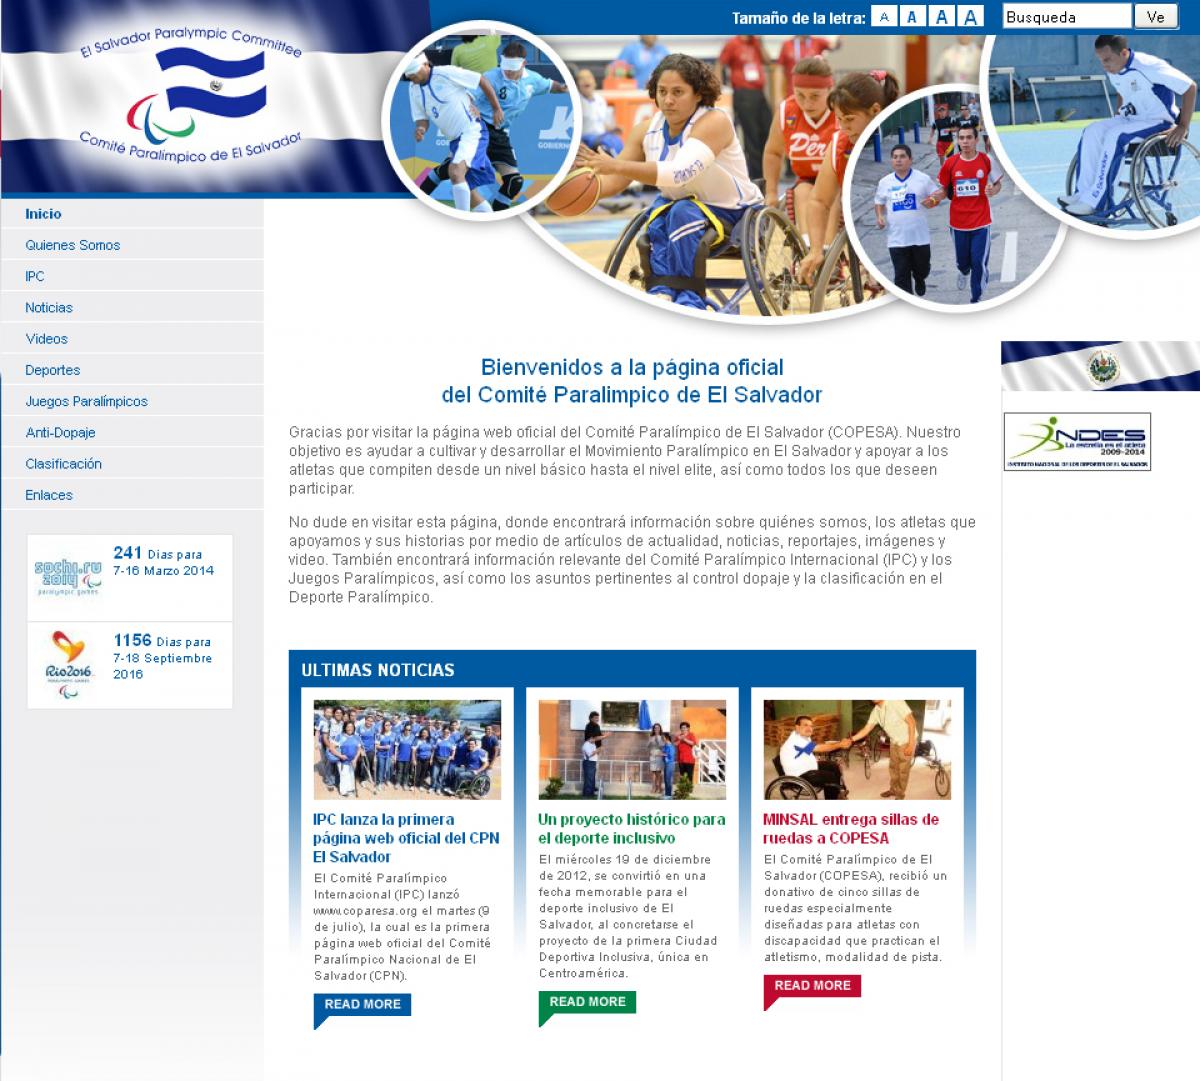 El Salvador website screenshot